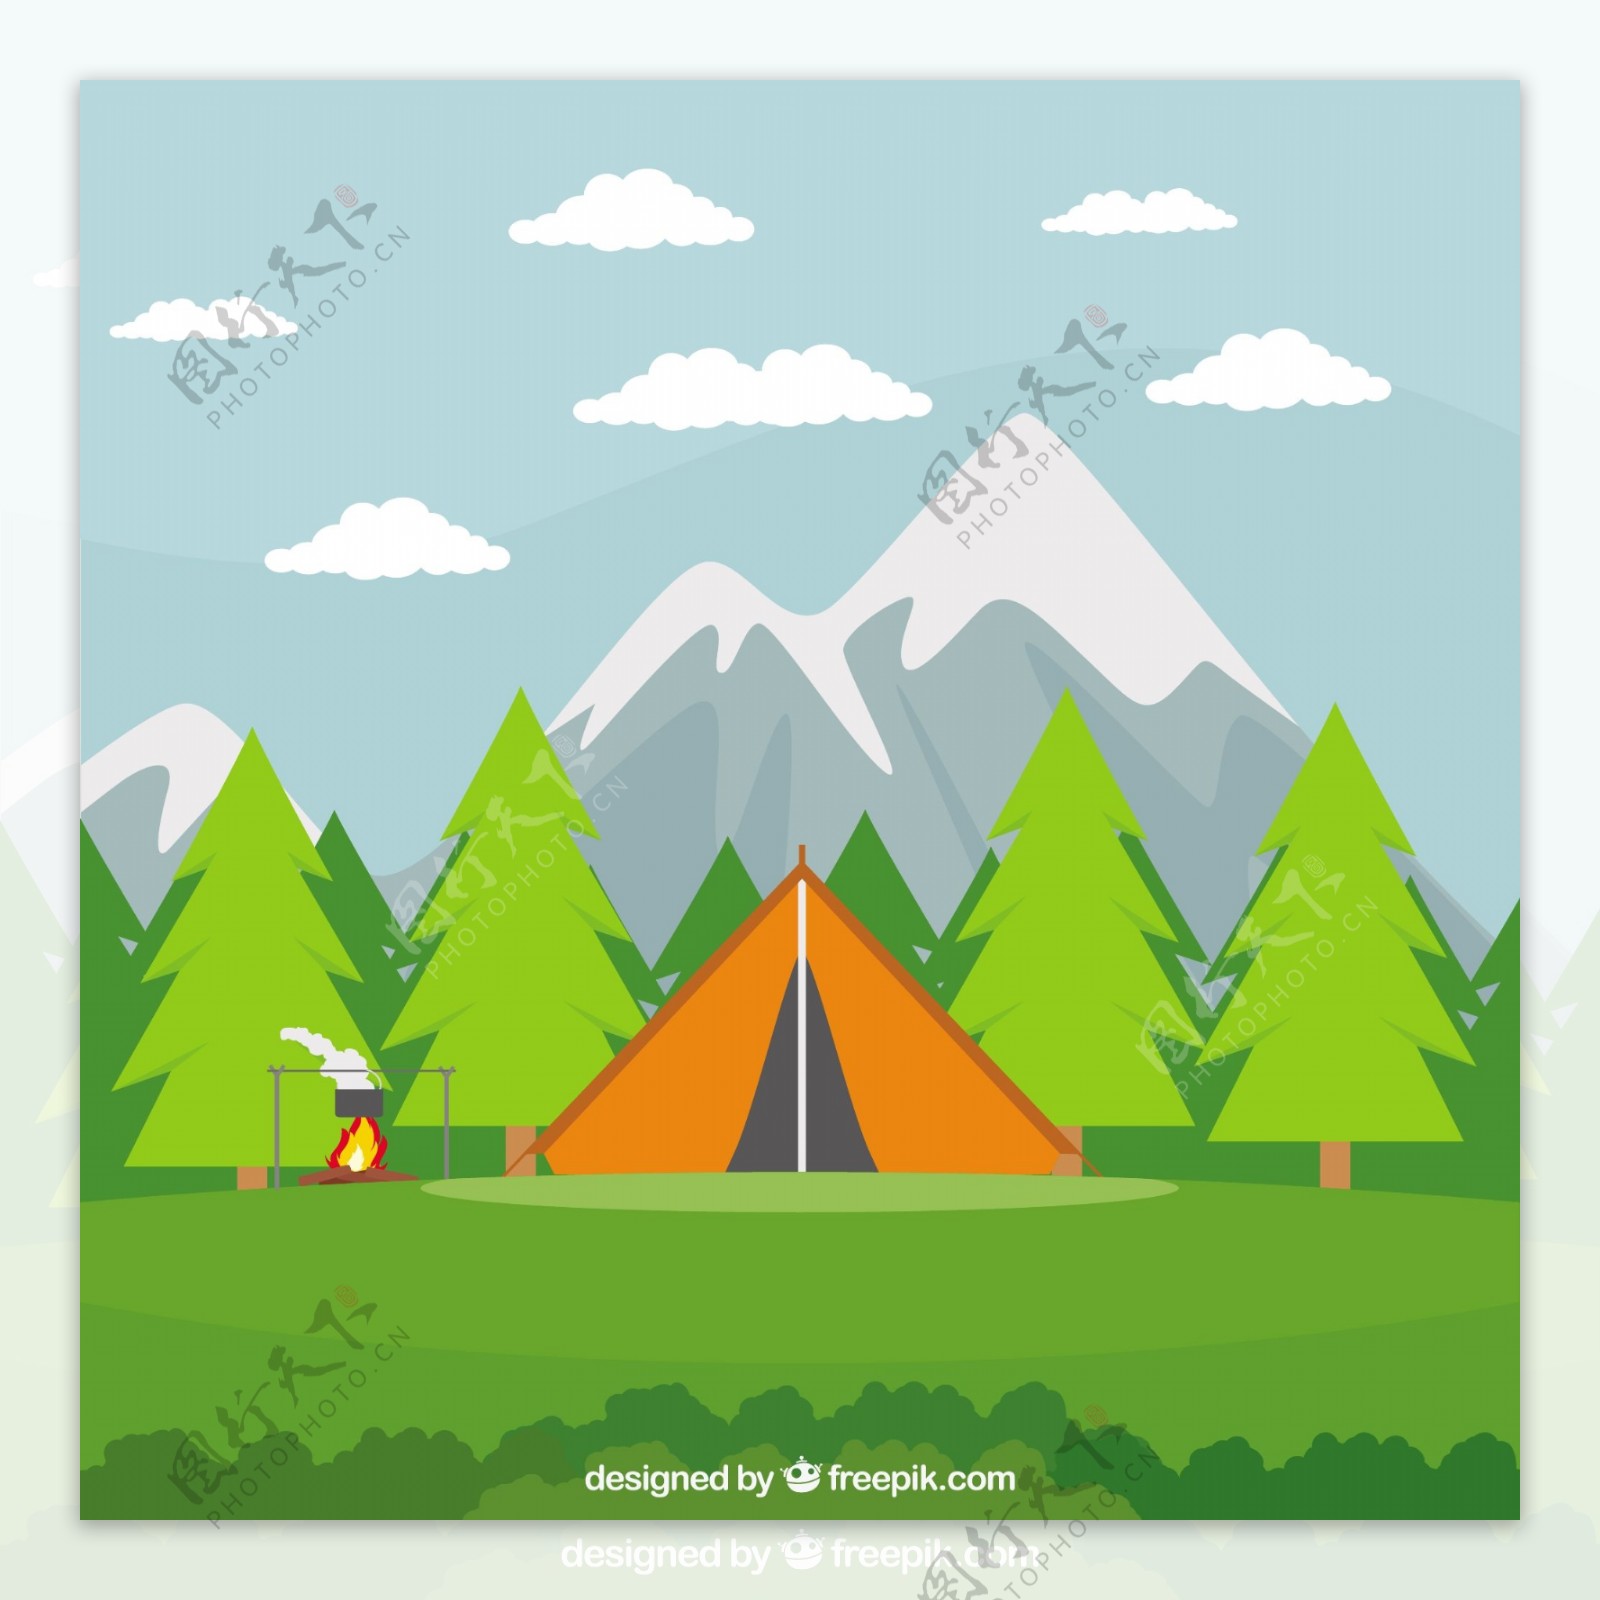 橙色野营帐篷在一个美丽的风景